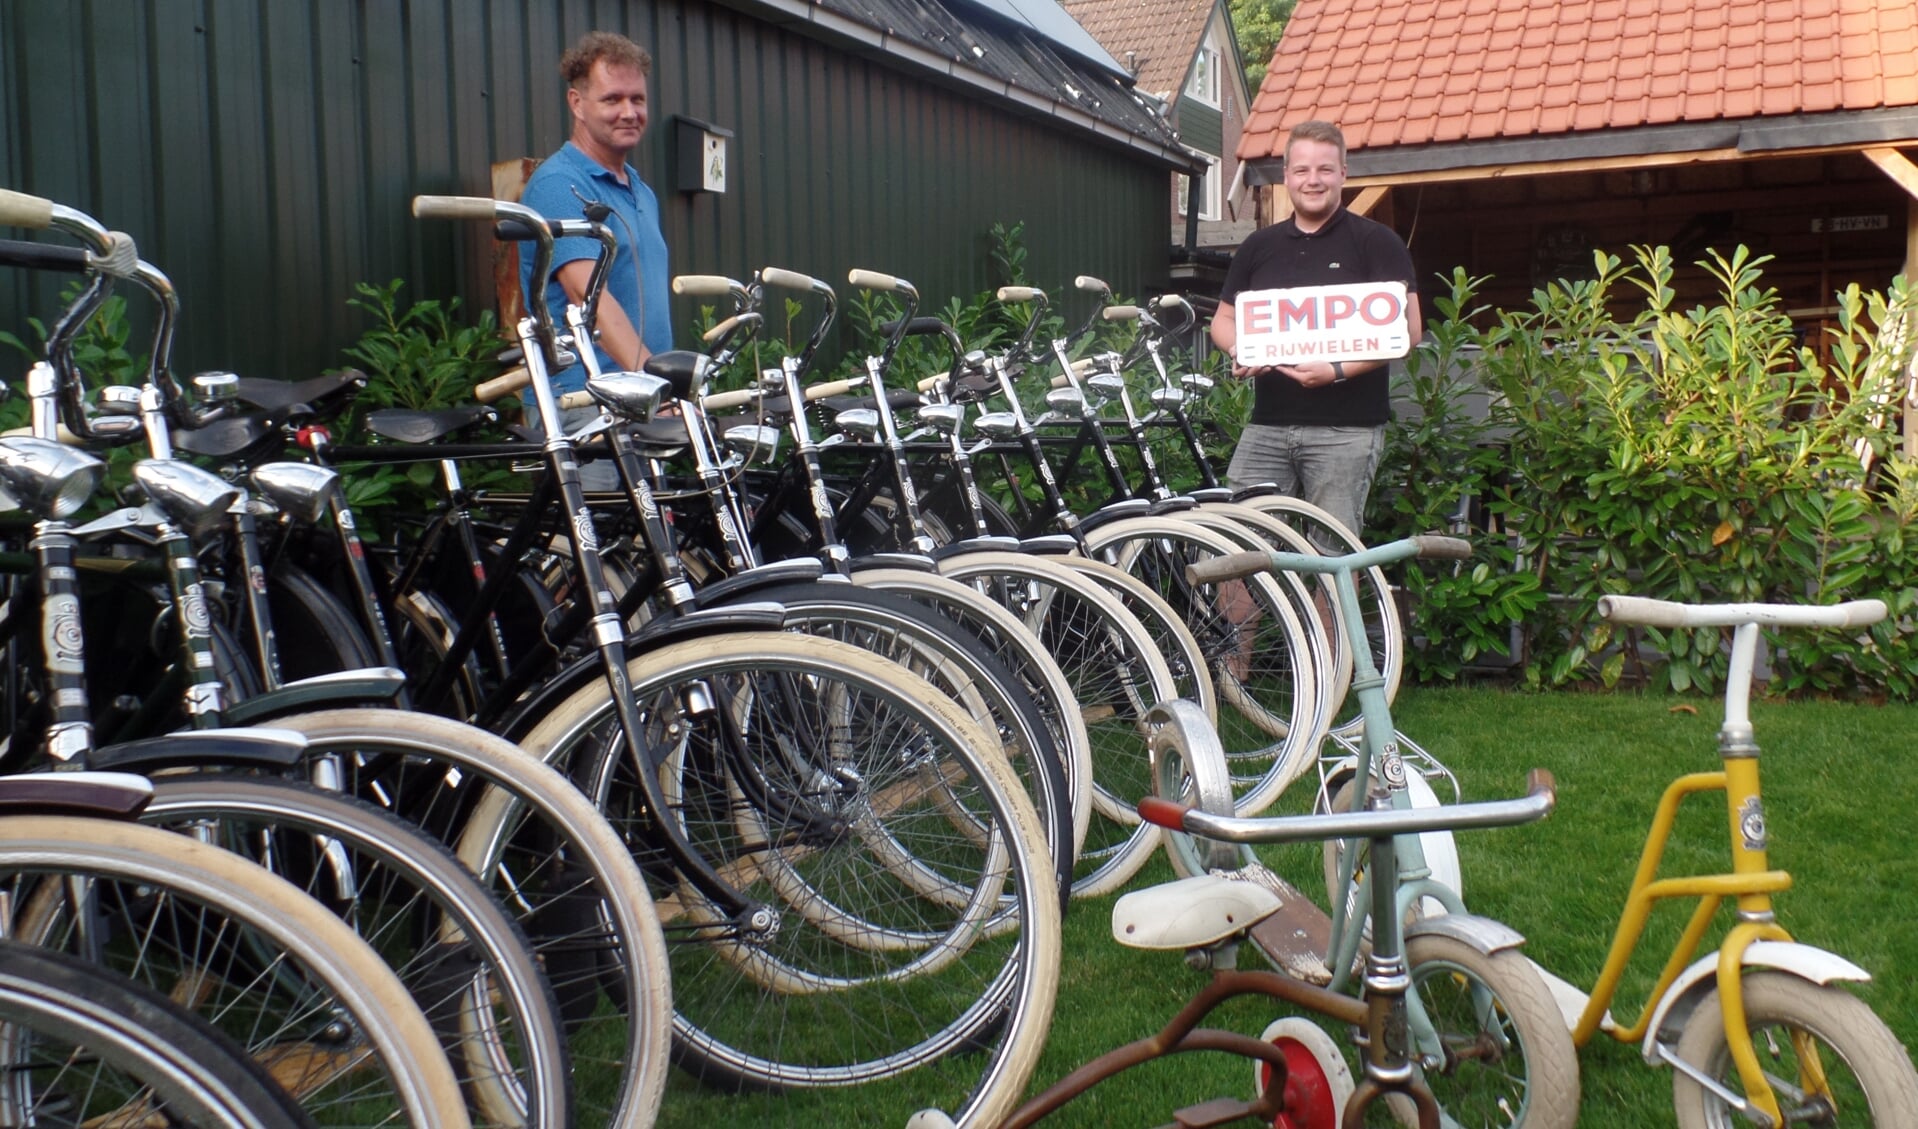 Raymond Lichtenberg (l) en Niek van Arik met hun verzameling oude Empo-fietsen. Foto: Jan Hendriksen 